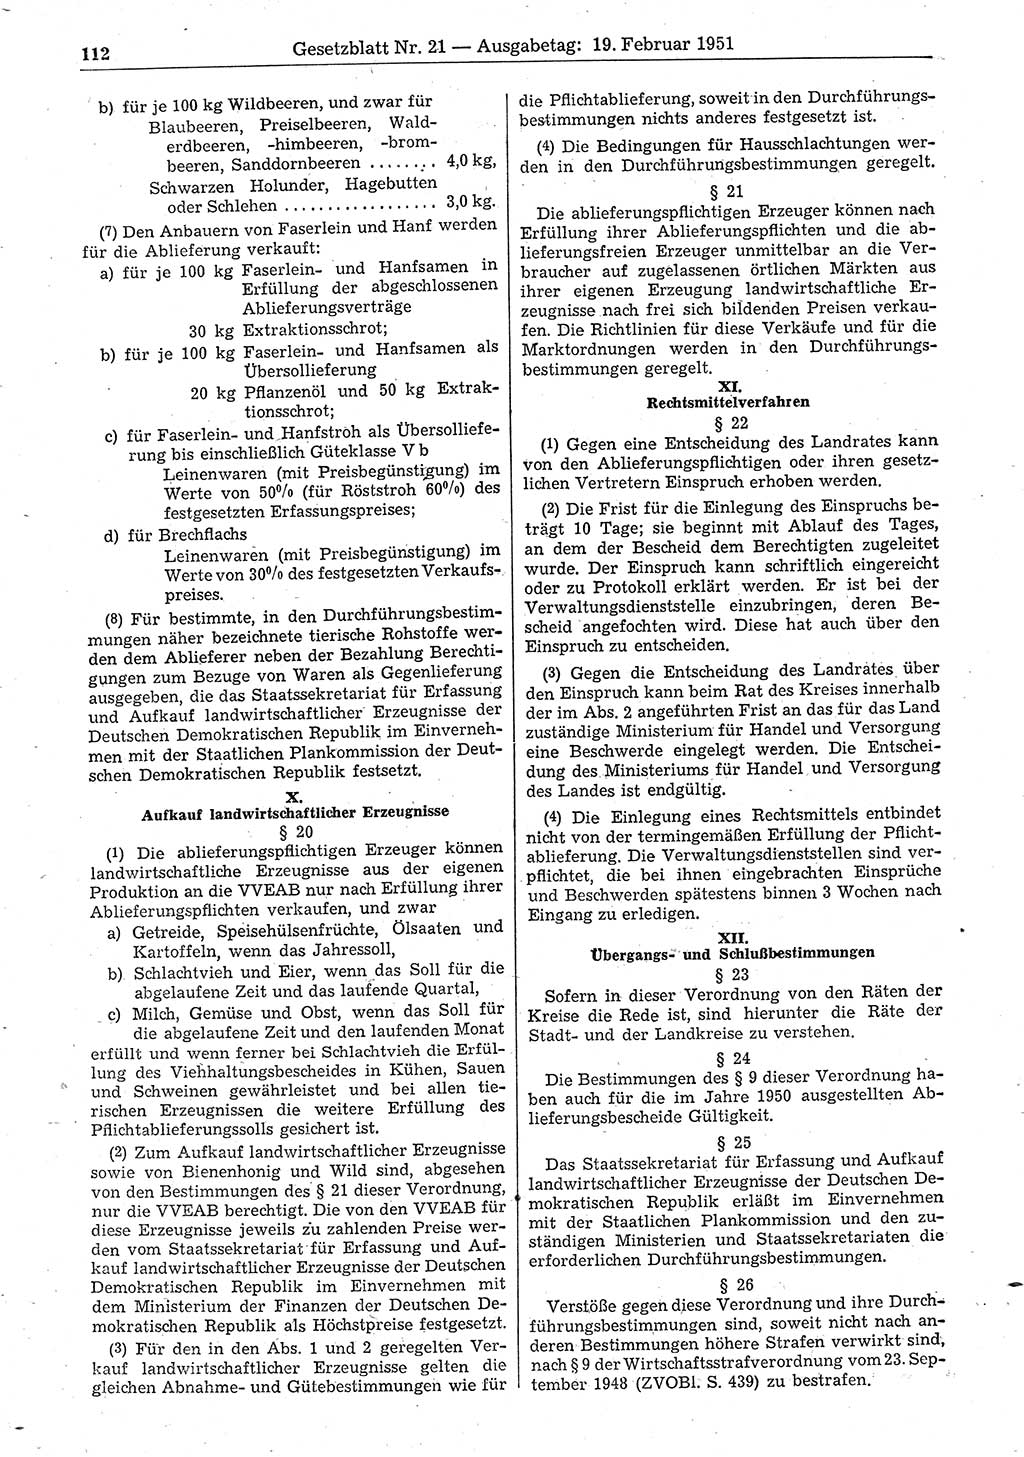 Gesetzblatt (GBl.) der Deutschen Demokratischen Republik (DDR) 1951, Seite 112 (GBl. DDR 1951, S. 112)